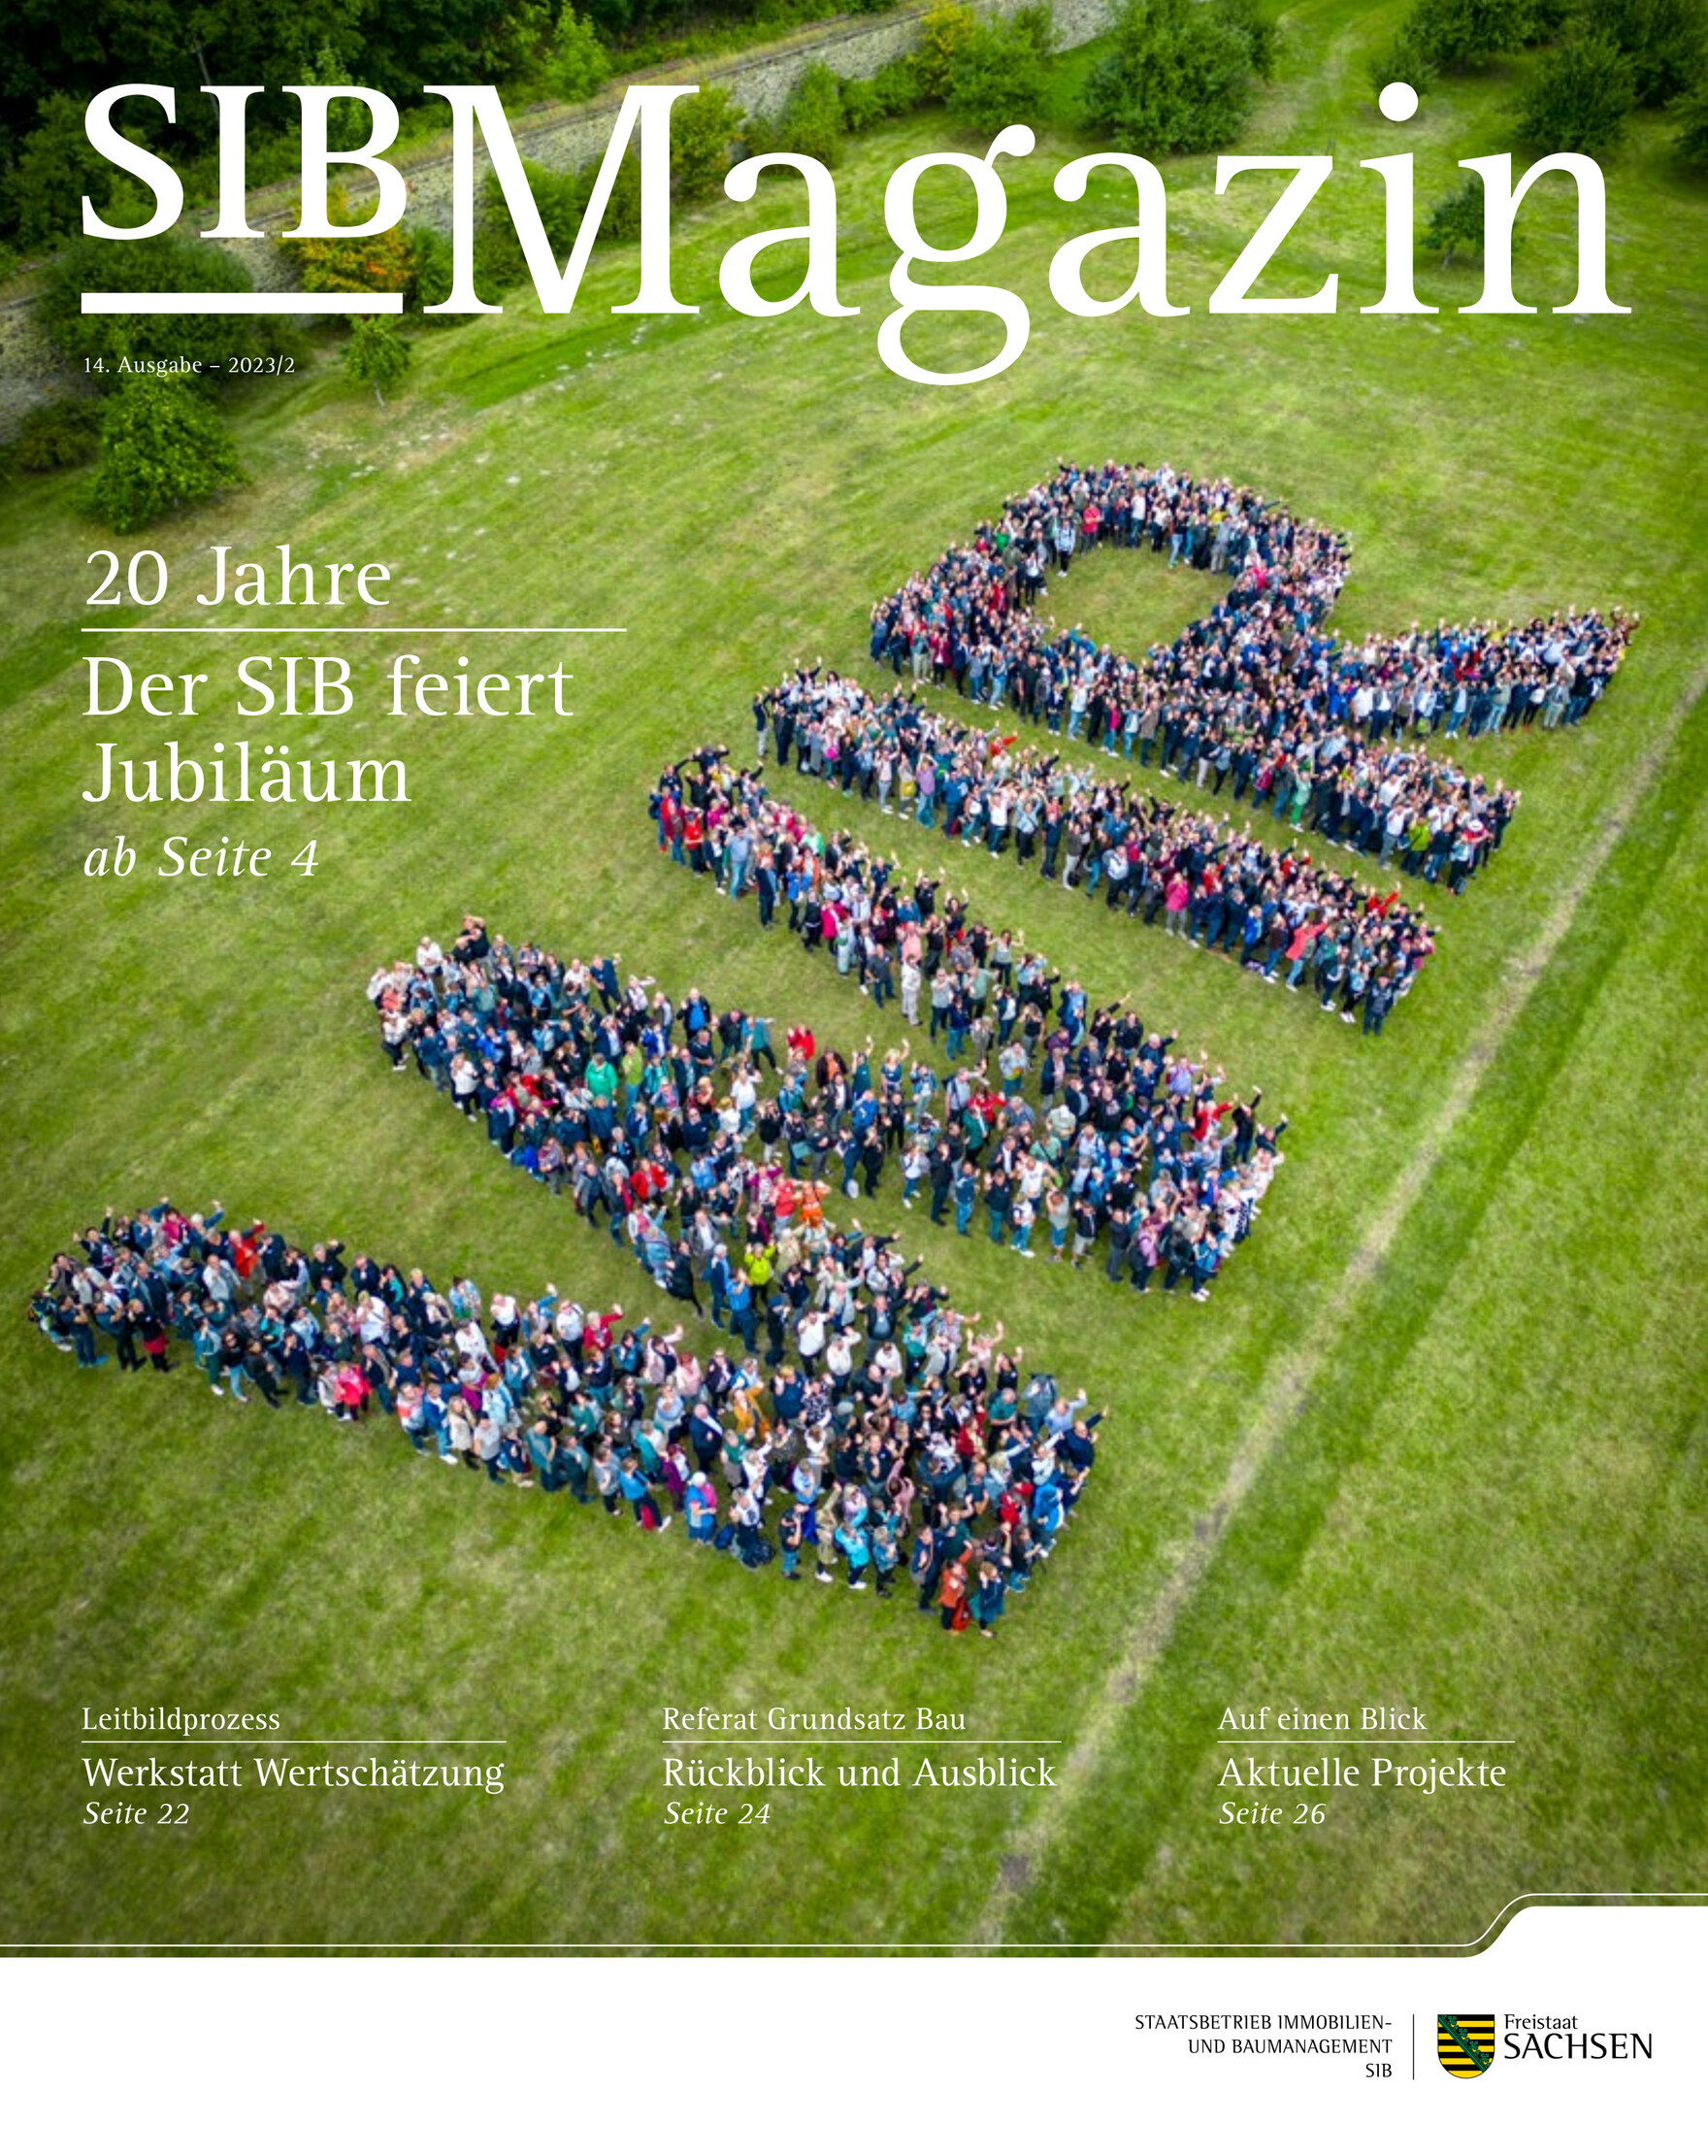 Hier ist das Titelbild des neuen SIB Magazins zu sehen. Die Mitarbeiter bilden darauf das Wort Wir auf einer grünen Wiese.